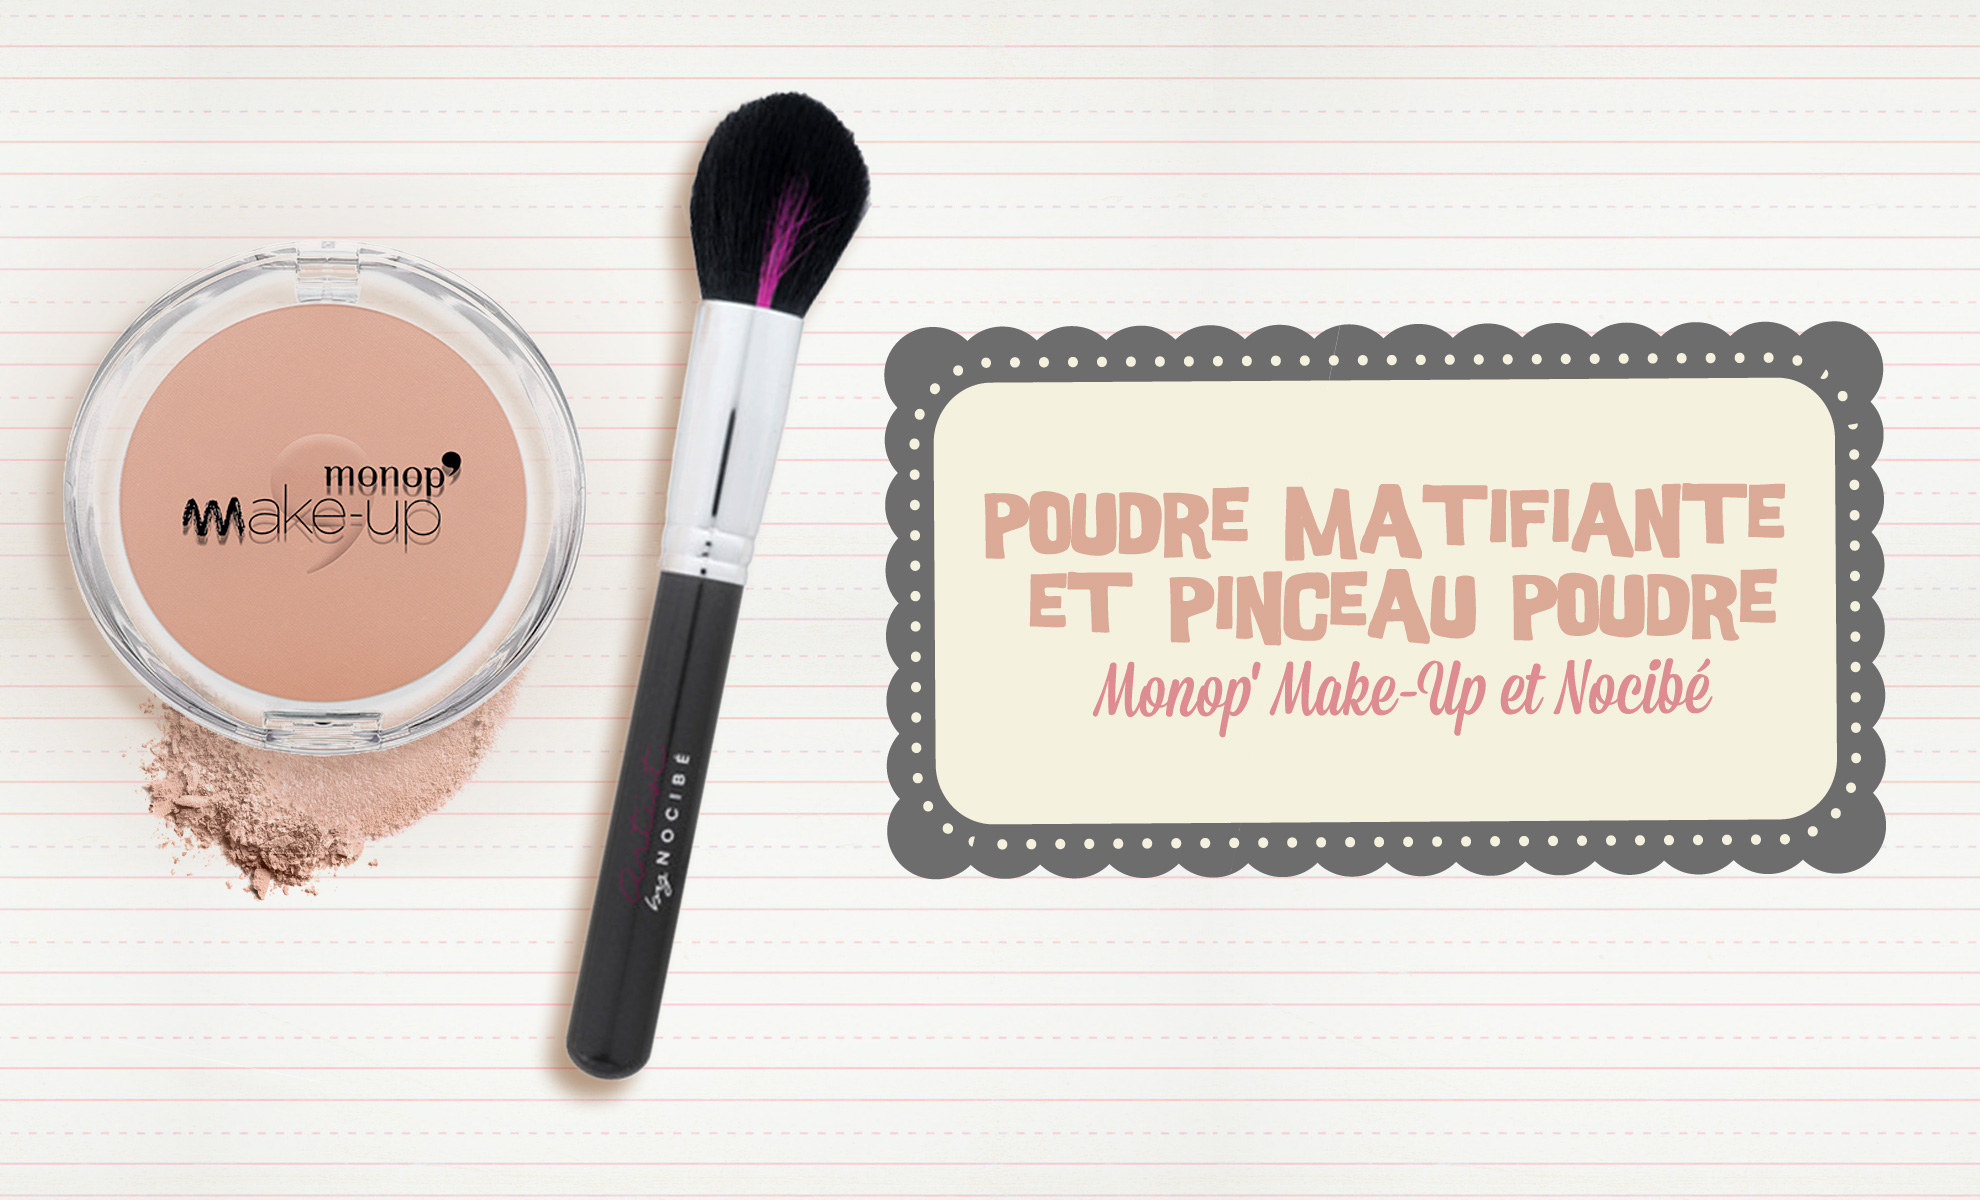 Poudre-Matifiante-Monop'-Make-Up-et-Pinceau-Poudre-Nocibé